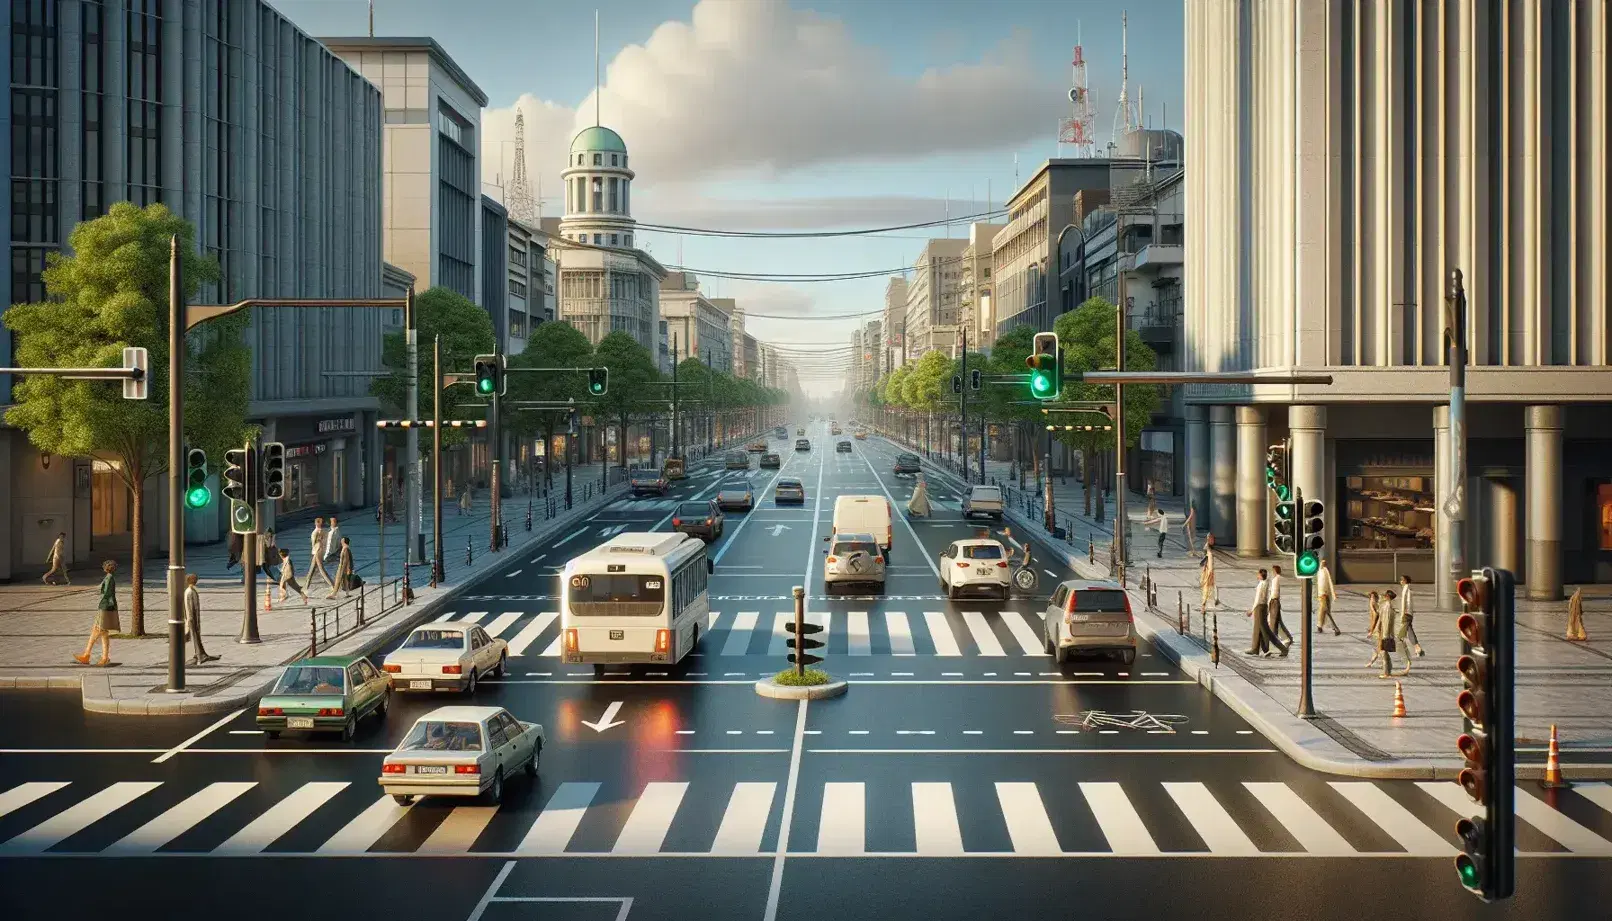 Escena urbana con calle pavimentada, semáforo en verde, paso peatonal, vehículos estacionados y en movimiento, personas caminando y árboles en acera, bajo cielo azul parcialmente nublado.